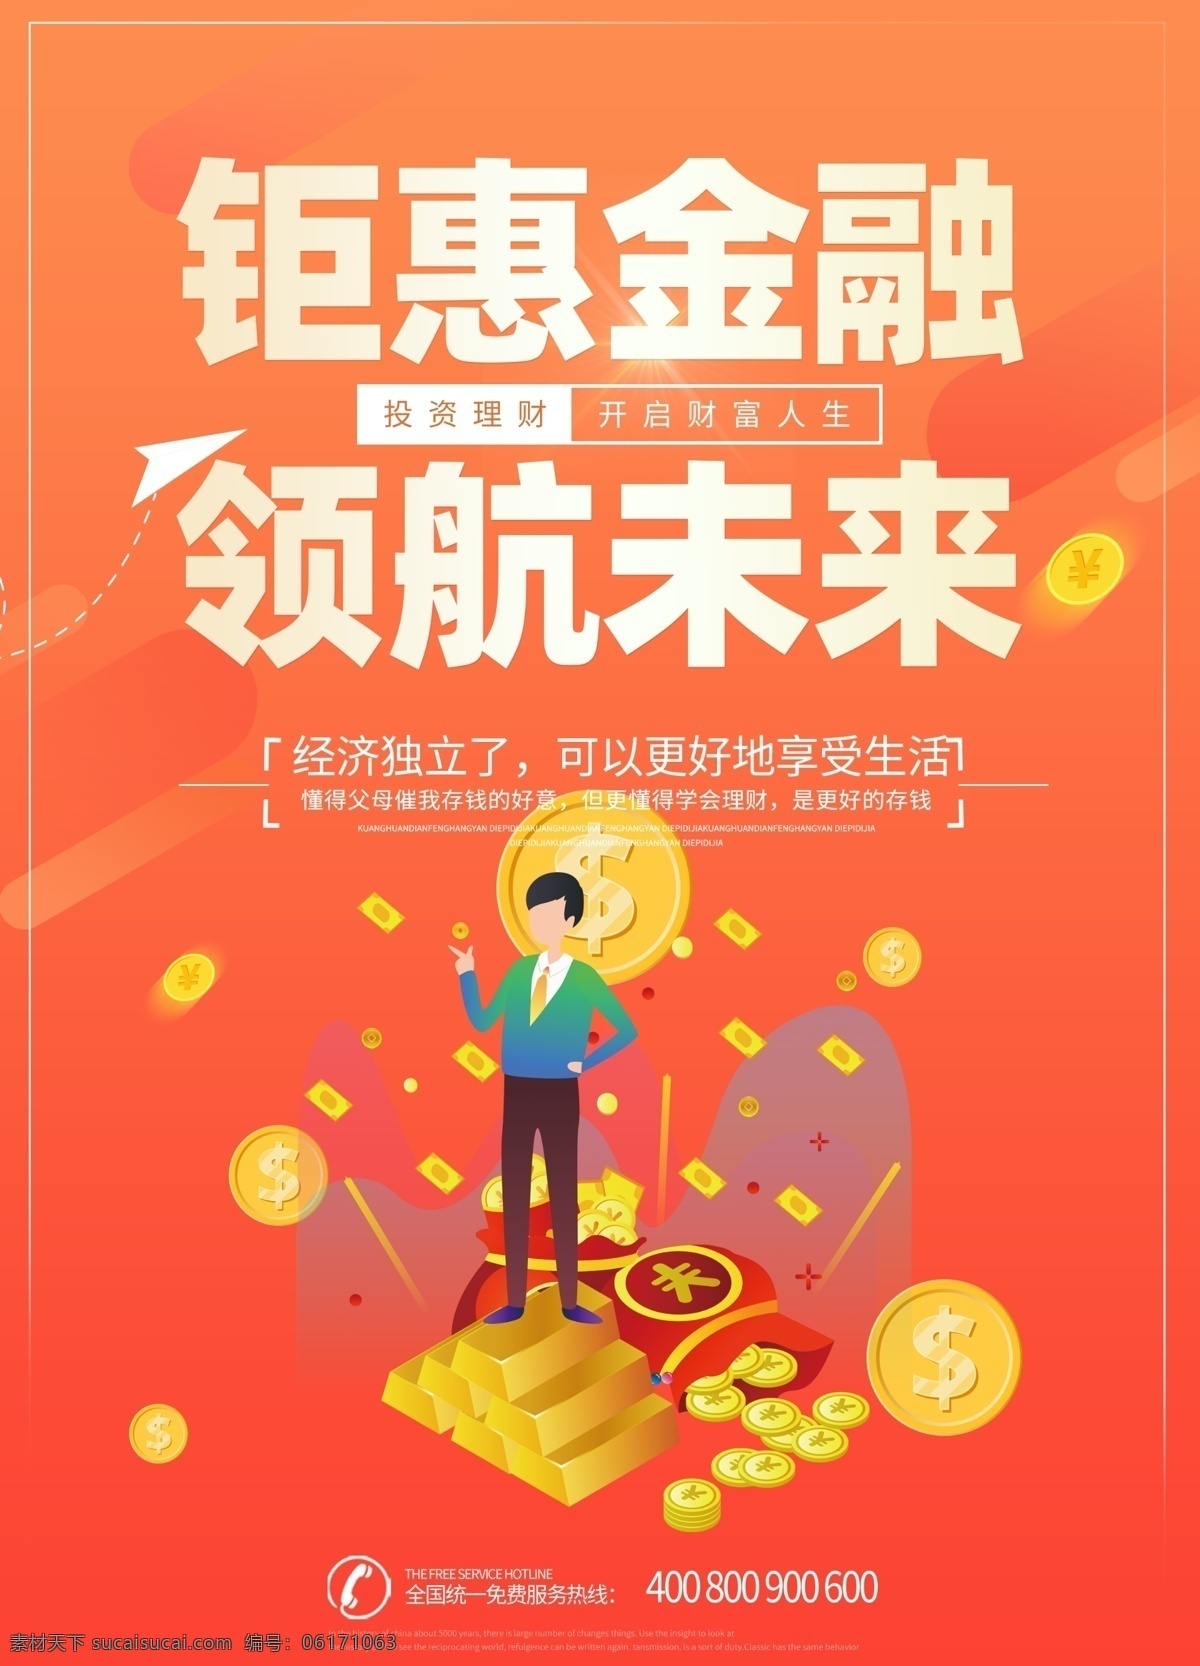 橙红色 金融 海报 大气 钜惠 未来 宣传单 金融投资 金融理财 理财